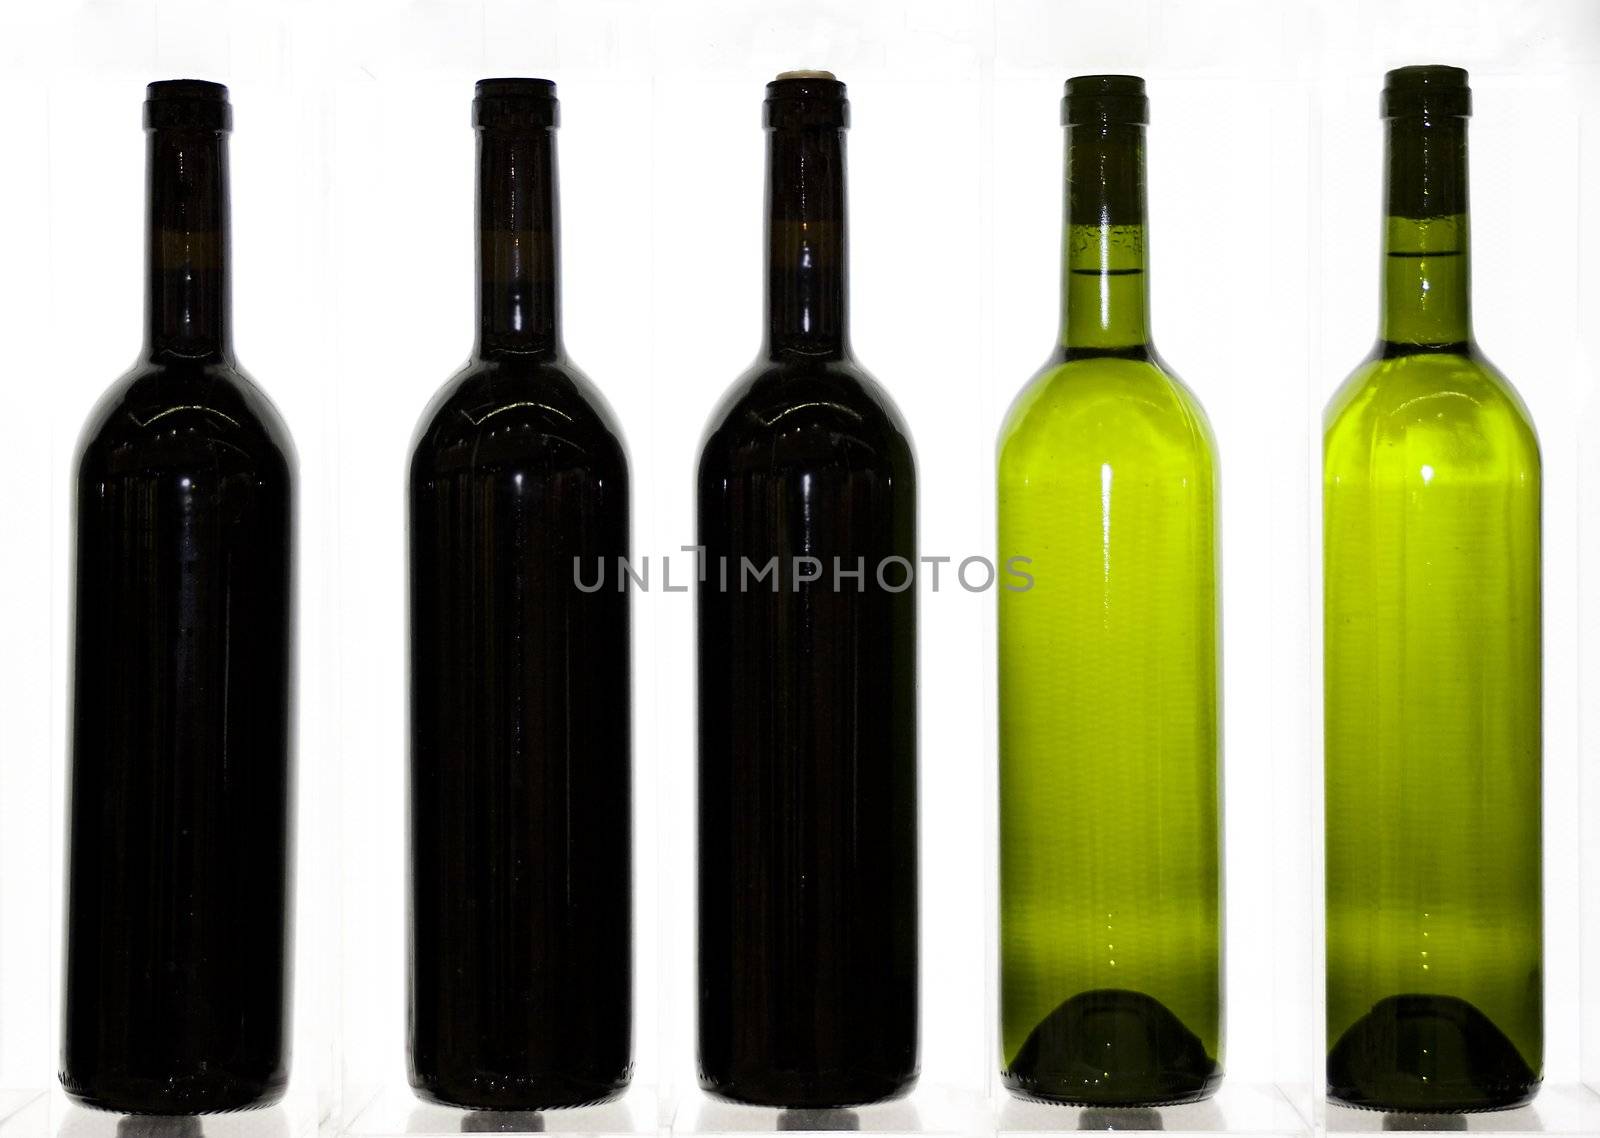 Some bottles of wine by Trebuchet